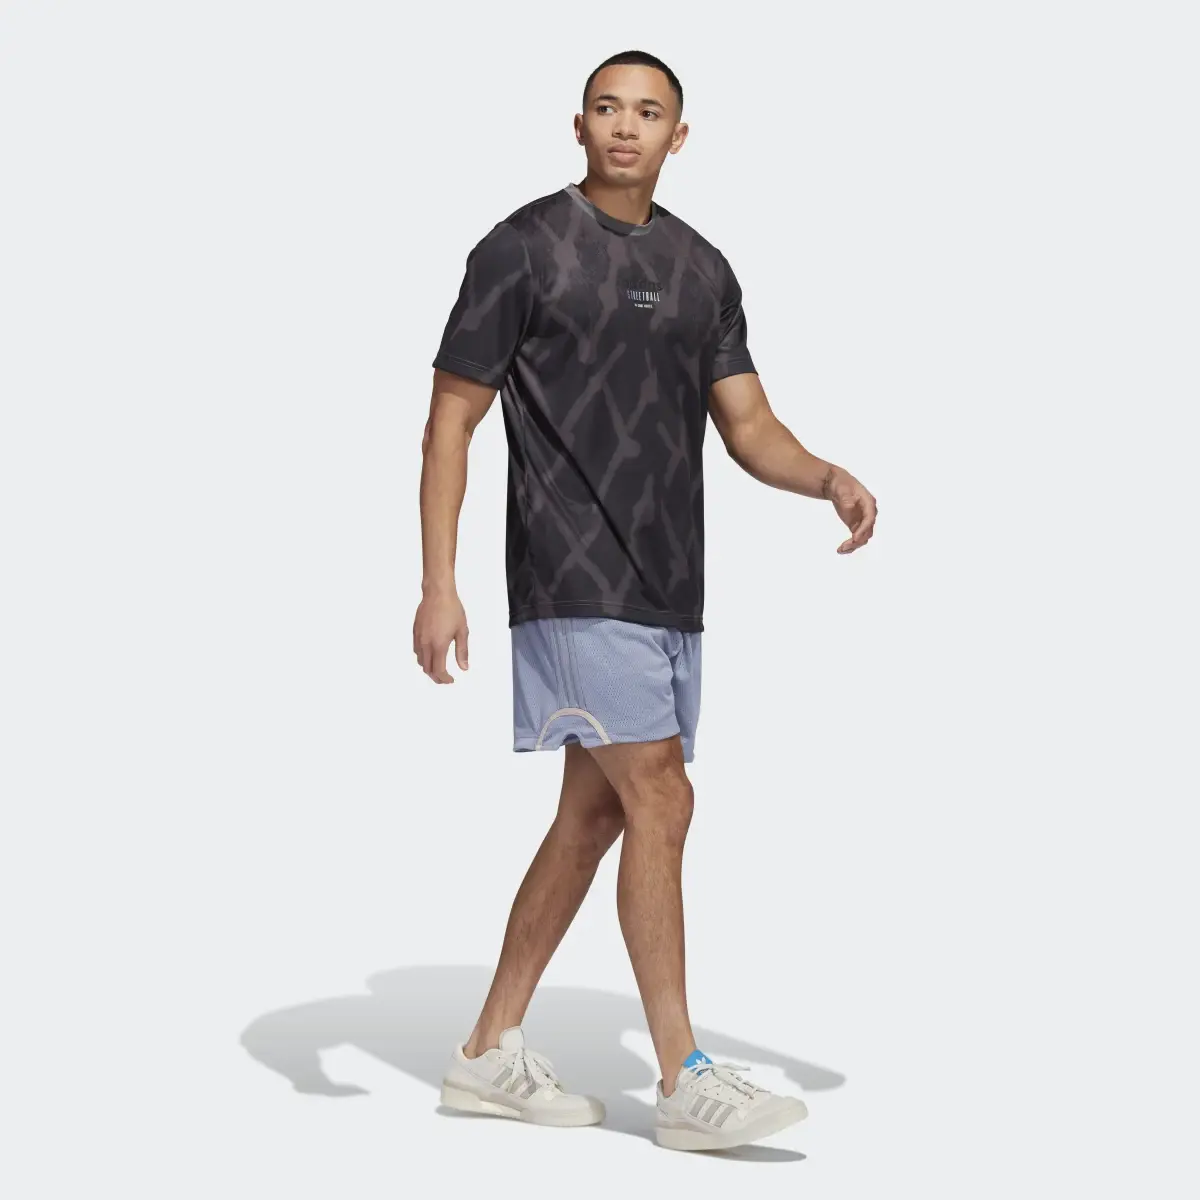 Adidas Basketball Mesh Shorts. 3